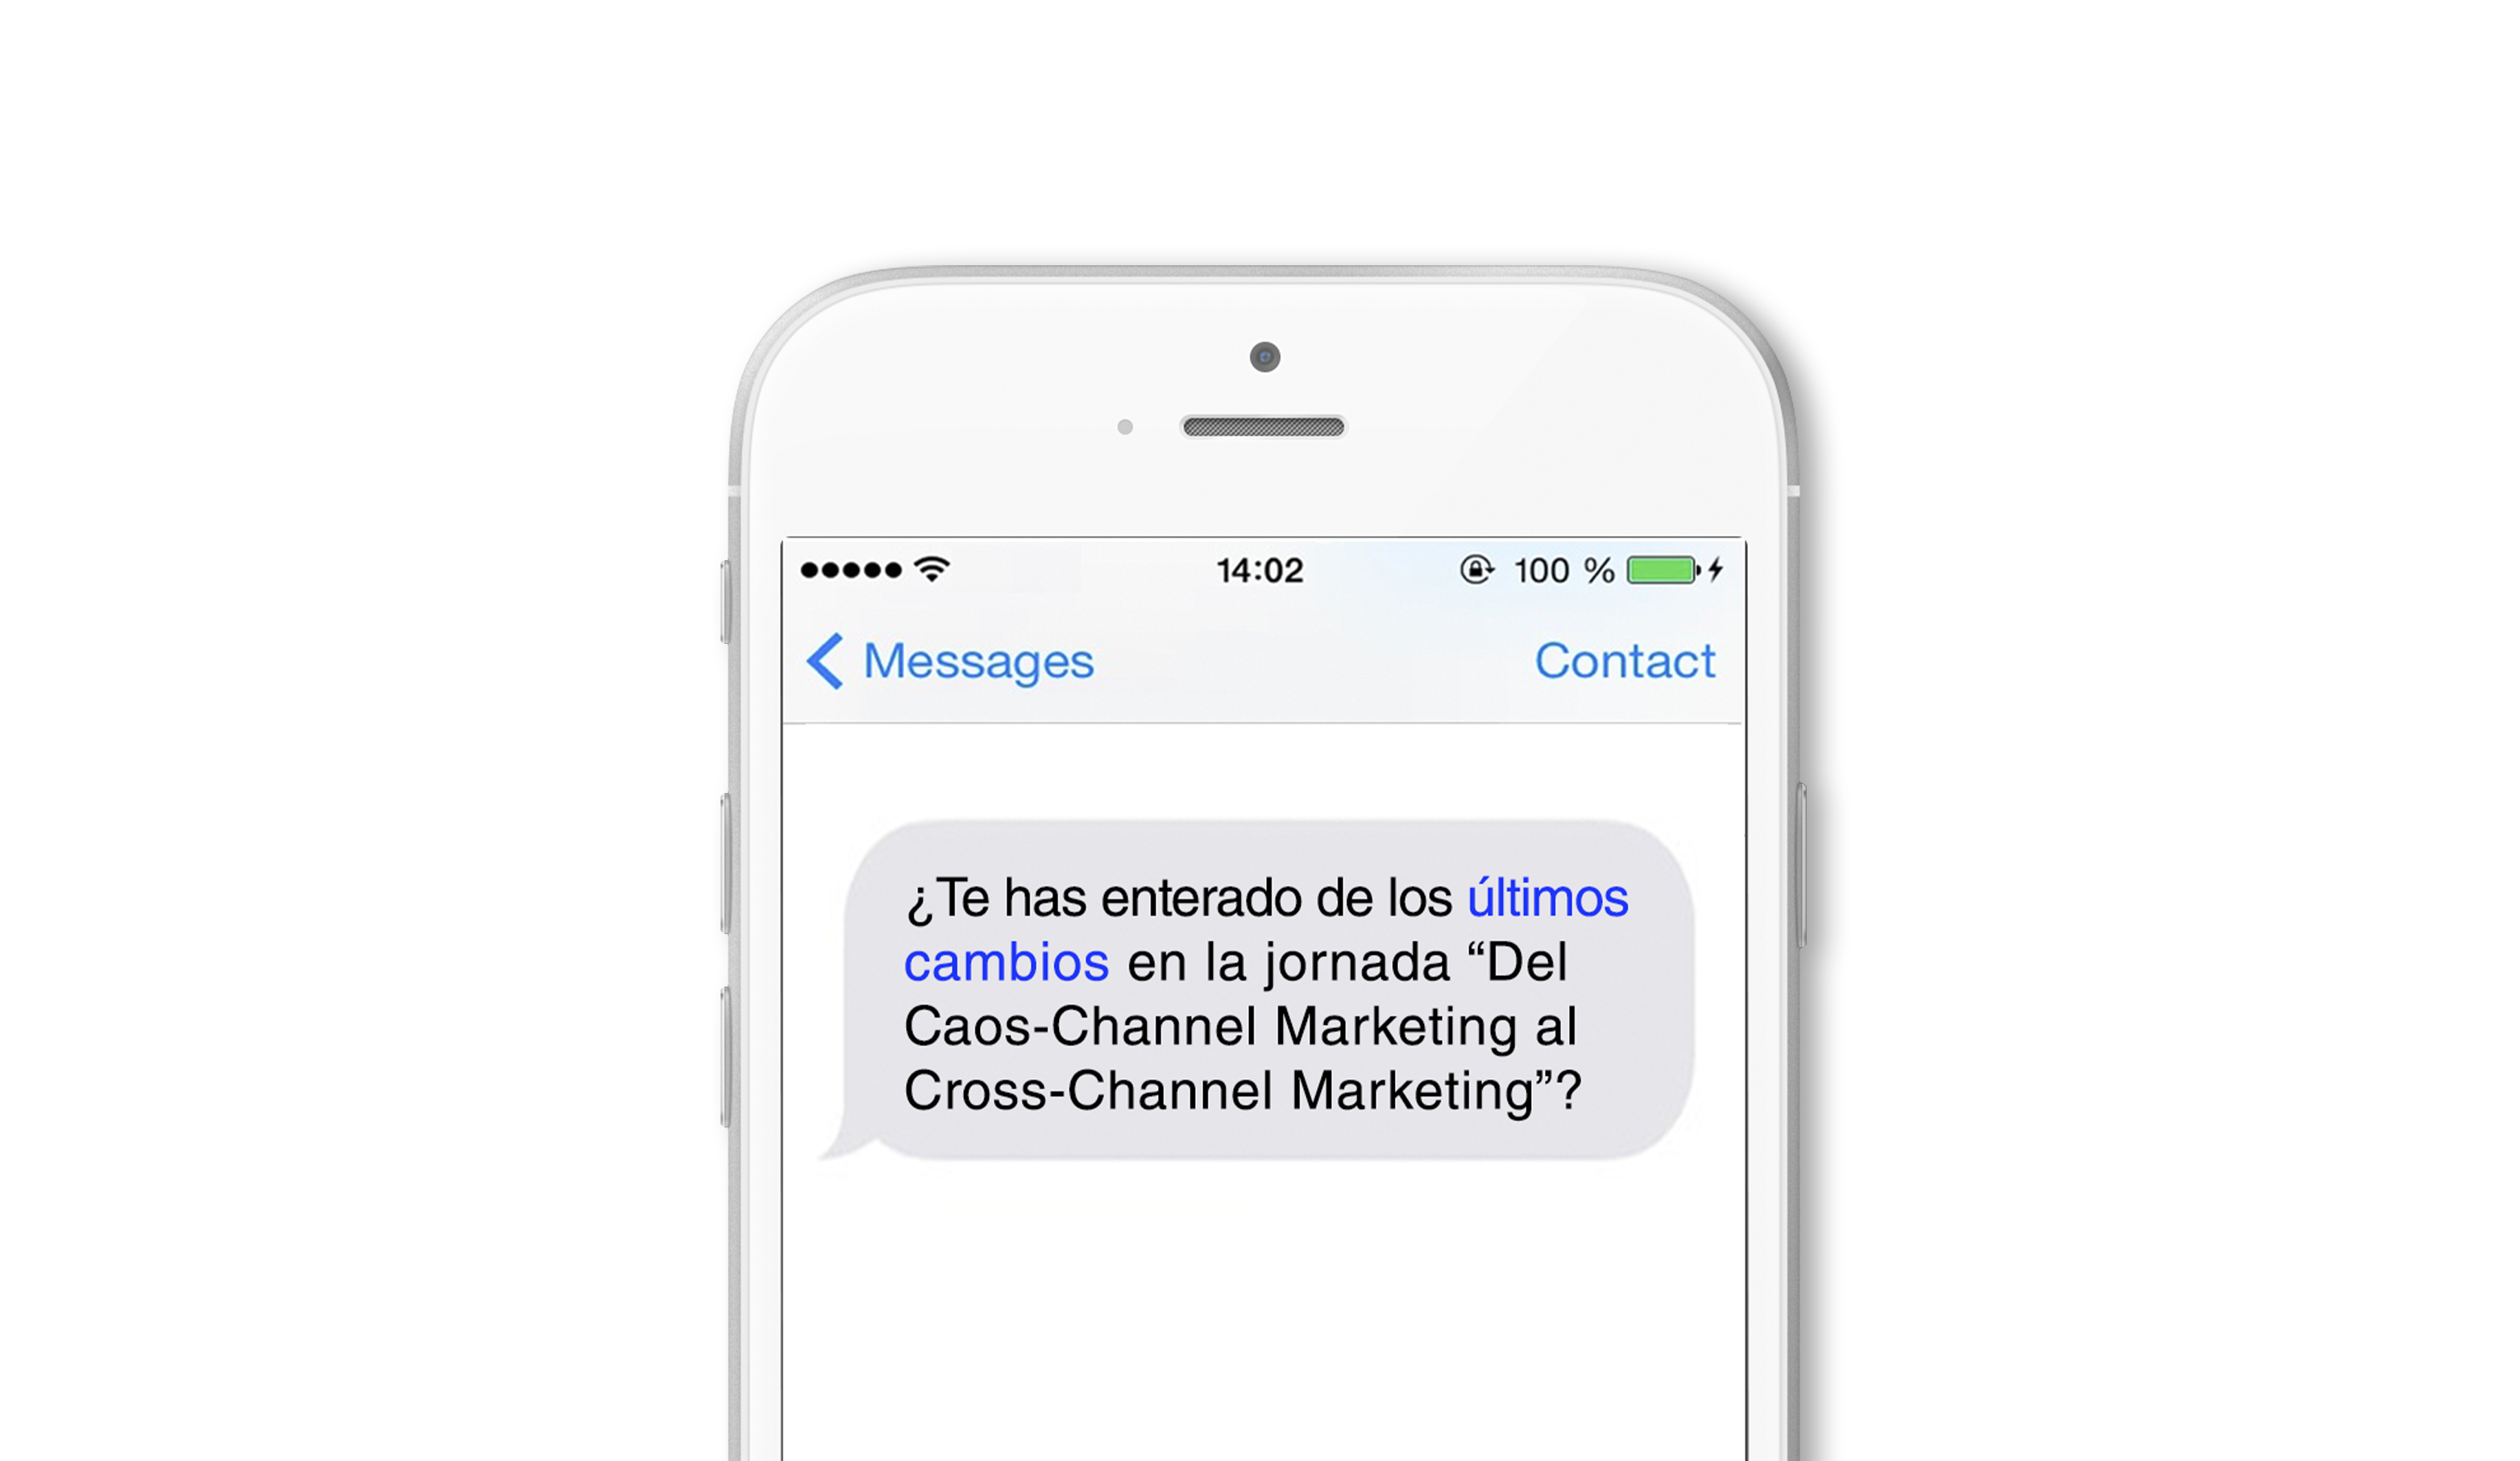 estrategia Cross-Channel para un evento: sms marketing